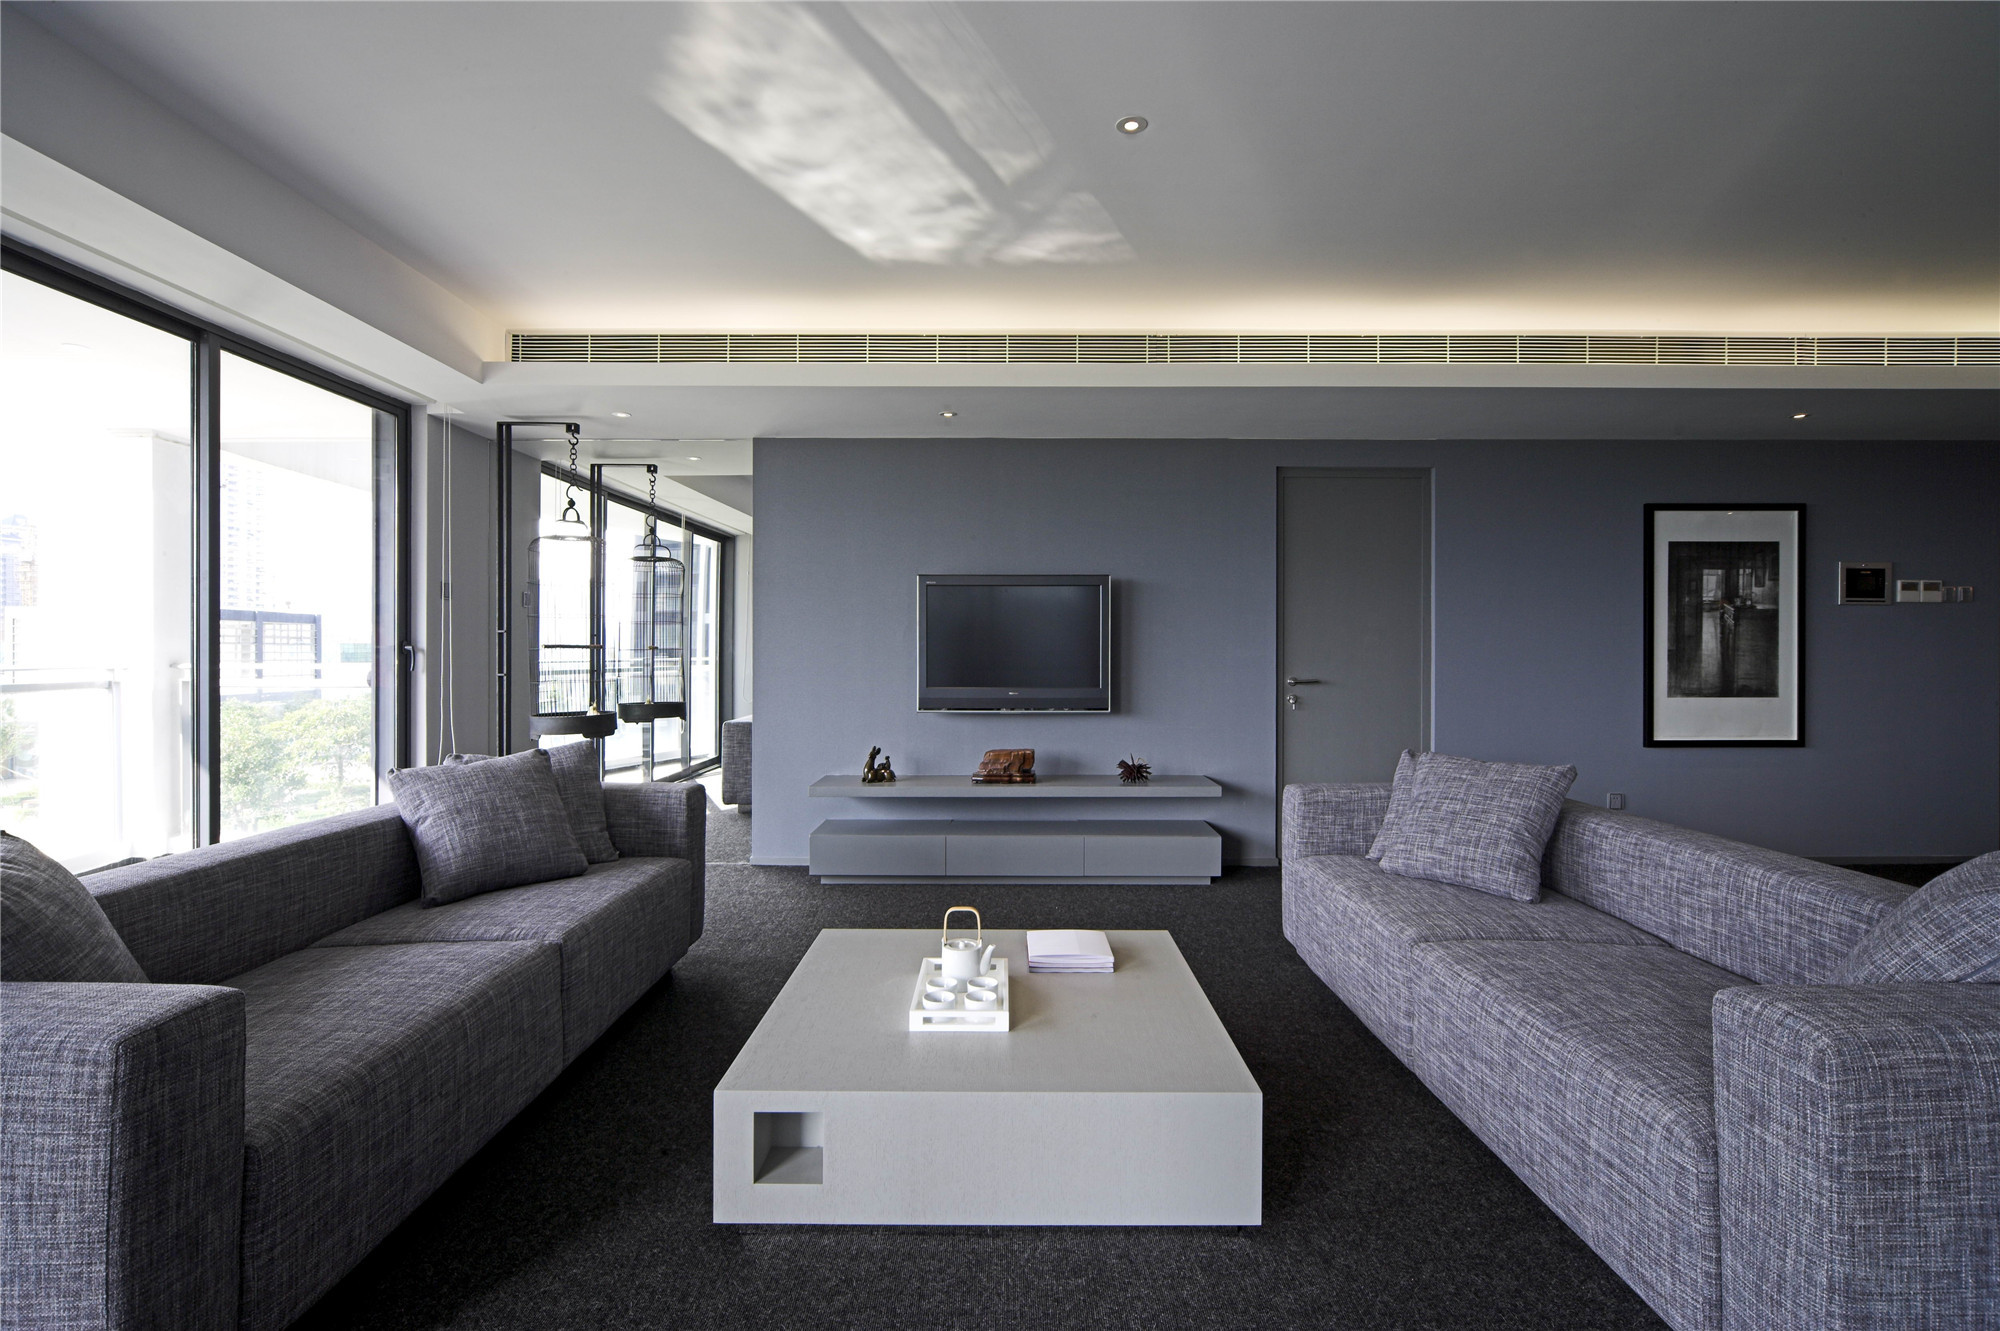 大户型,140平米以上装修,15-20万装修,客厅,现代简约风格,沙发,电视背景墙,灰色